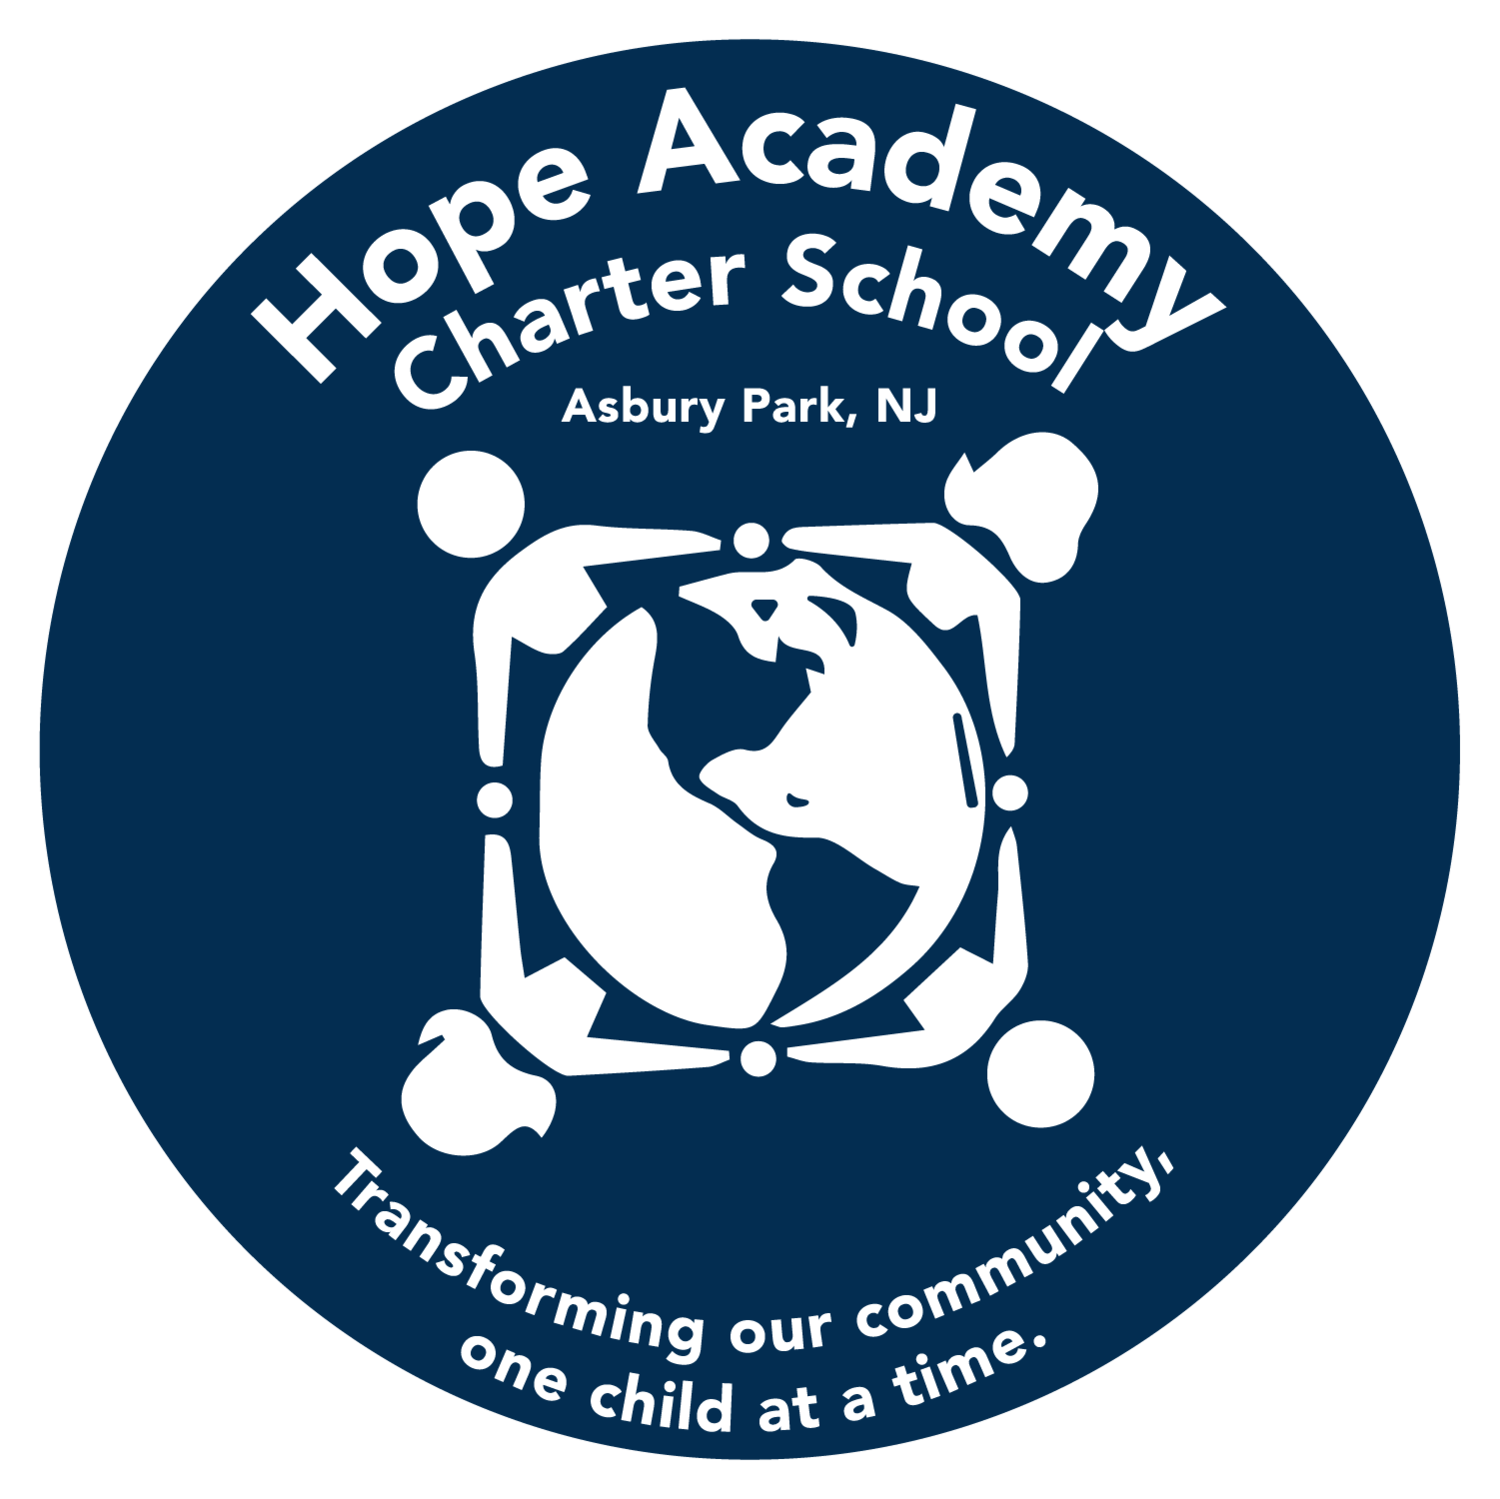 Hope Academy Charter School